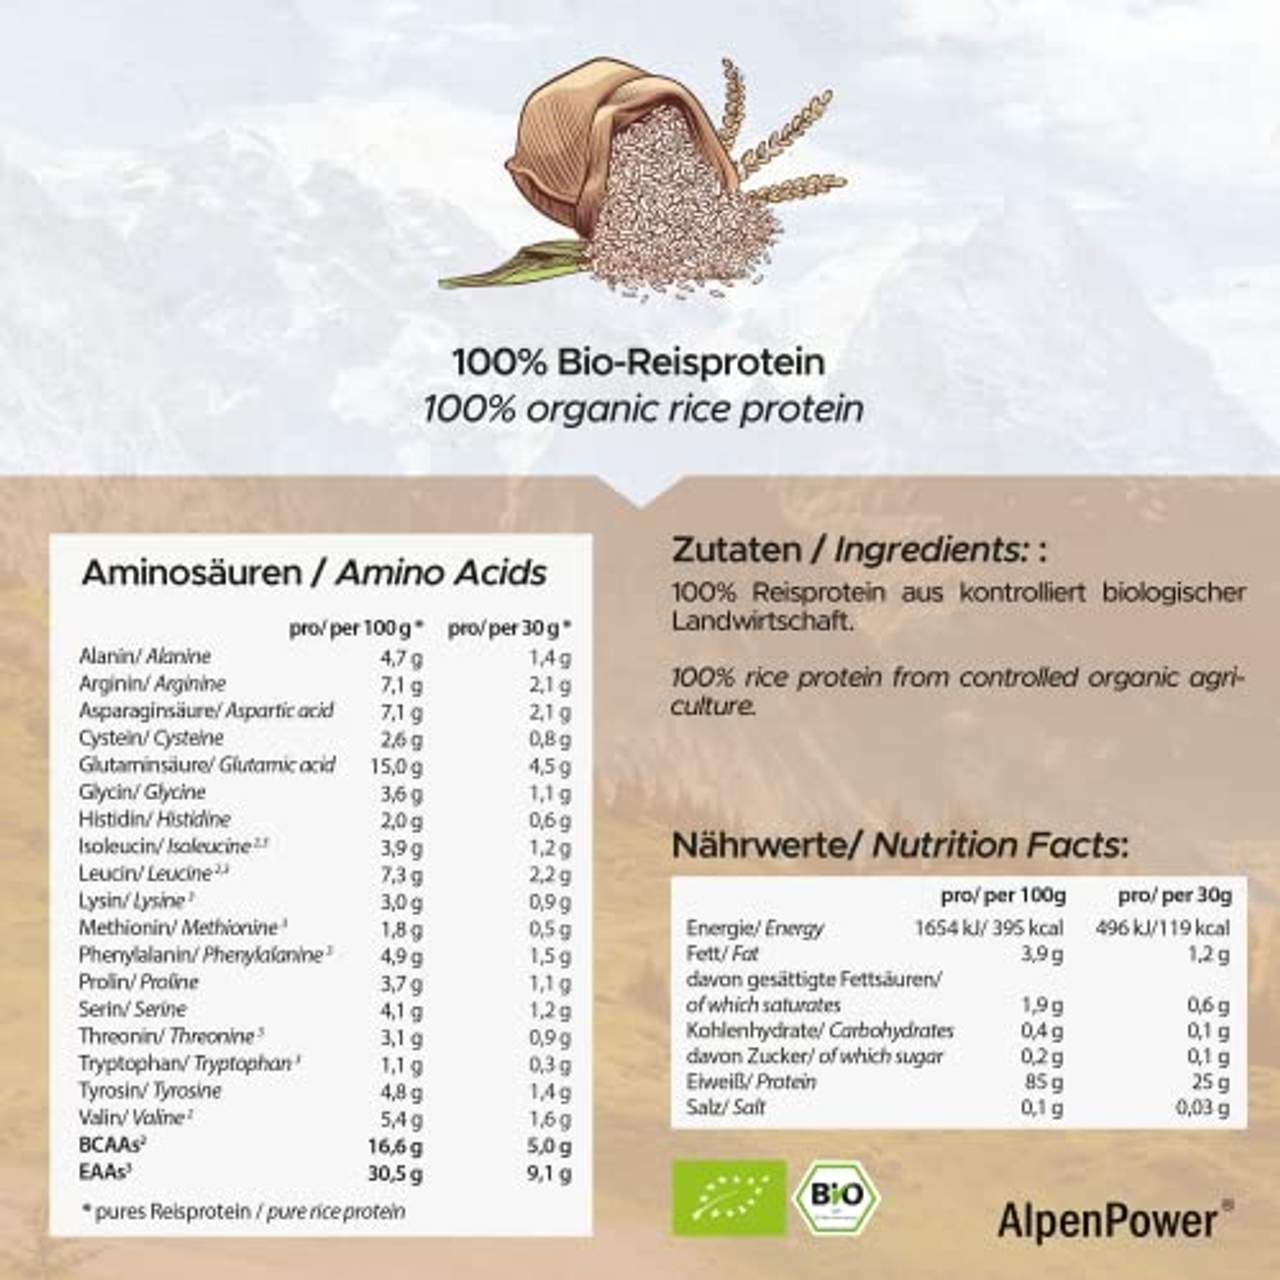 AlpenPower BIO Reisprotein 600g I Ohne Zusatzstoffe I 100% reines Reisprotein-Isolat